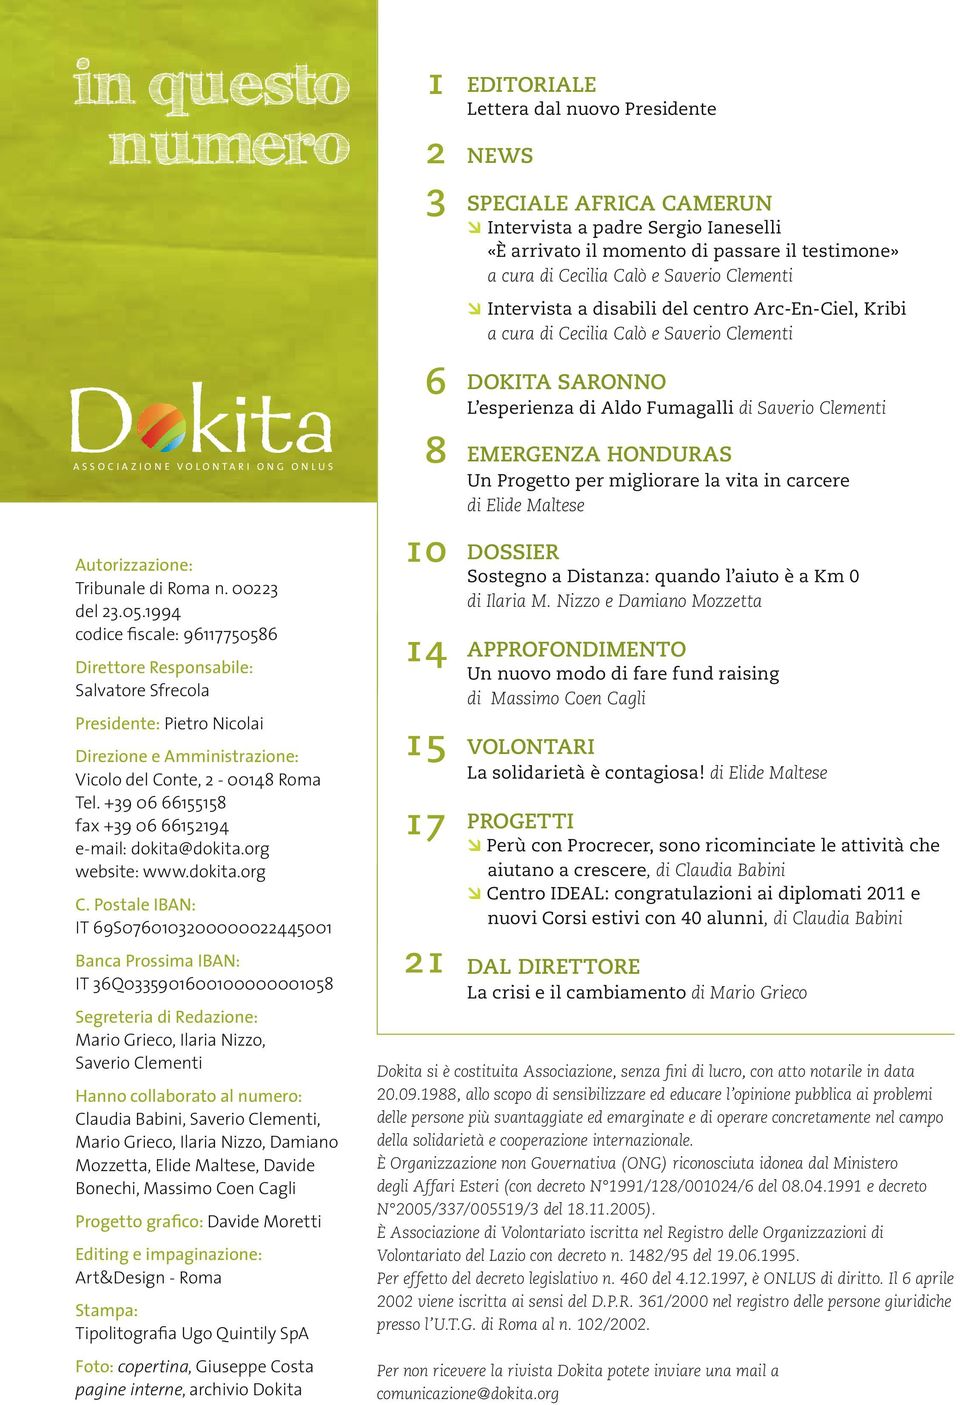 +39 06 66155158 fax +39 06 66152194 e-mail: dokita@dokita.org website: www.dokita.org C.